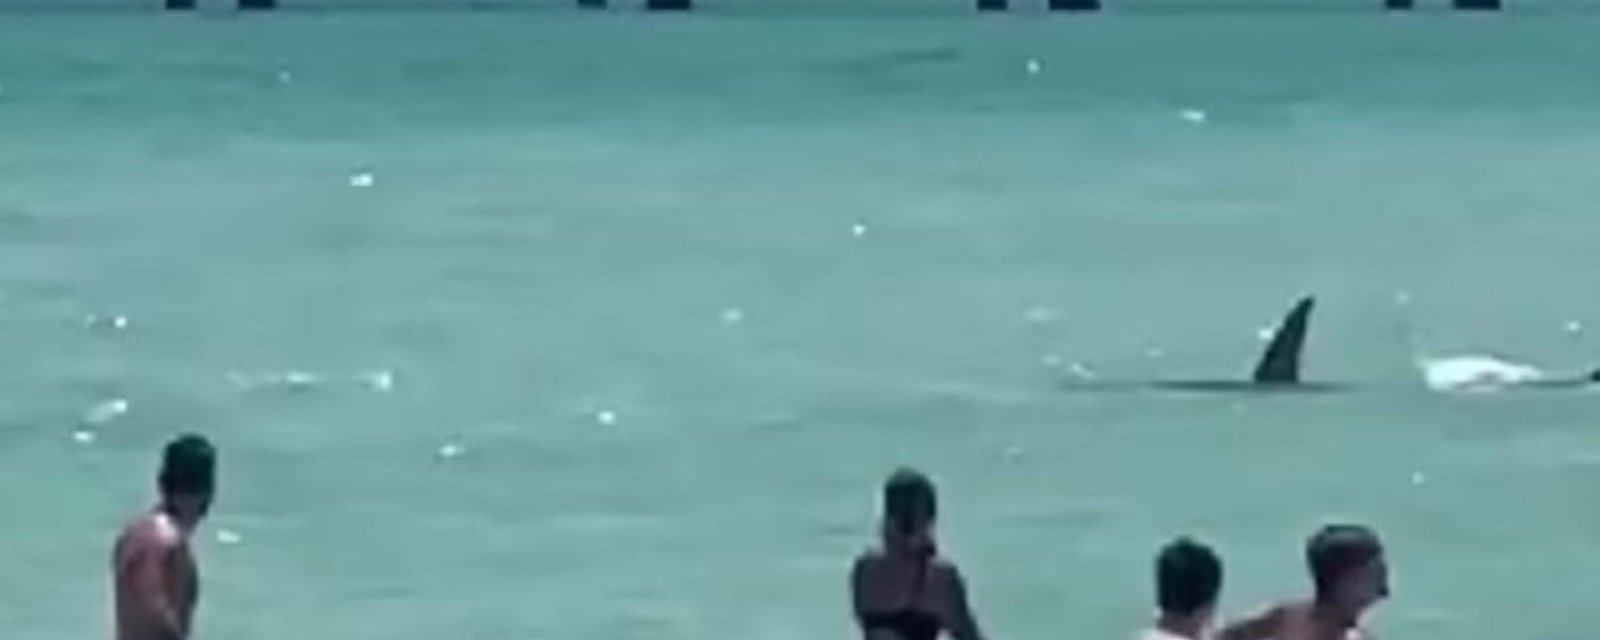 Vidéo: Un requin donne la frousse à plusieurs personnes en nageant au milieu des baigneurs